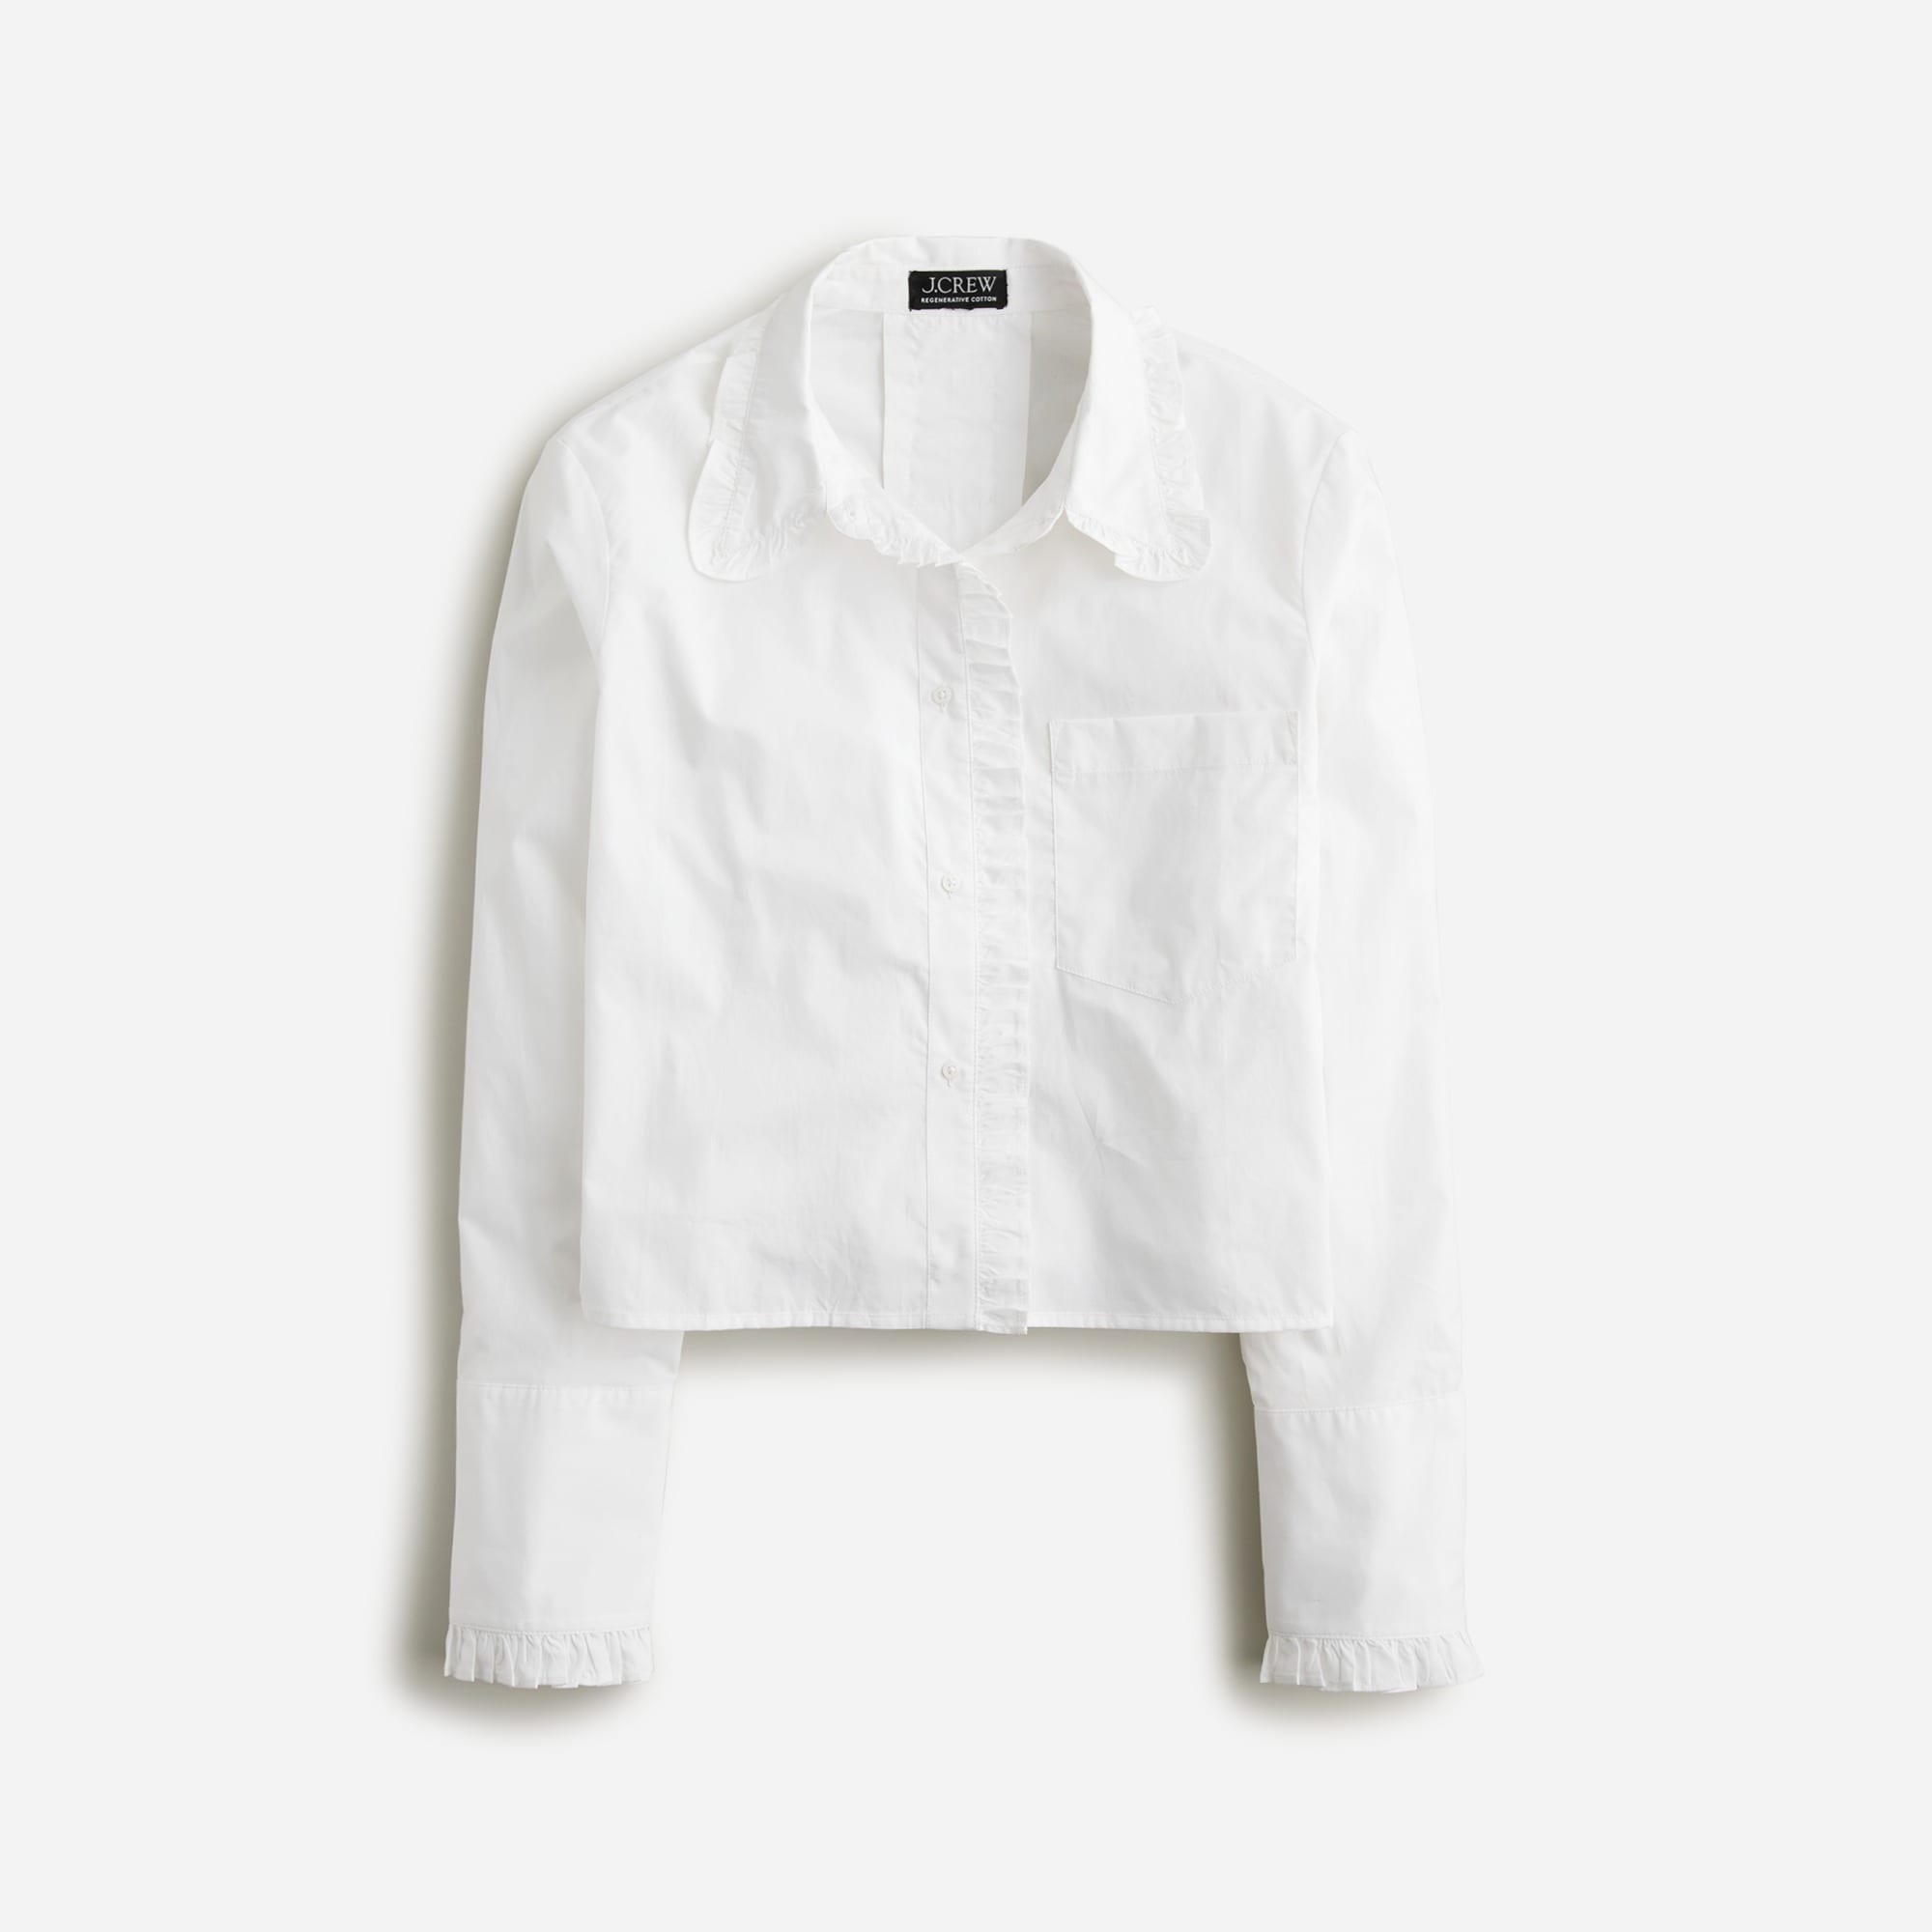  Ruffle-trim button-up shirt in cotton poplin